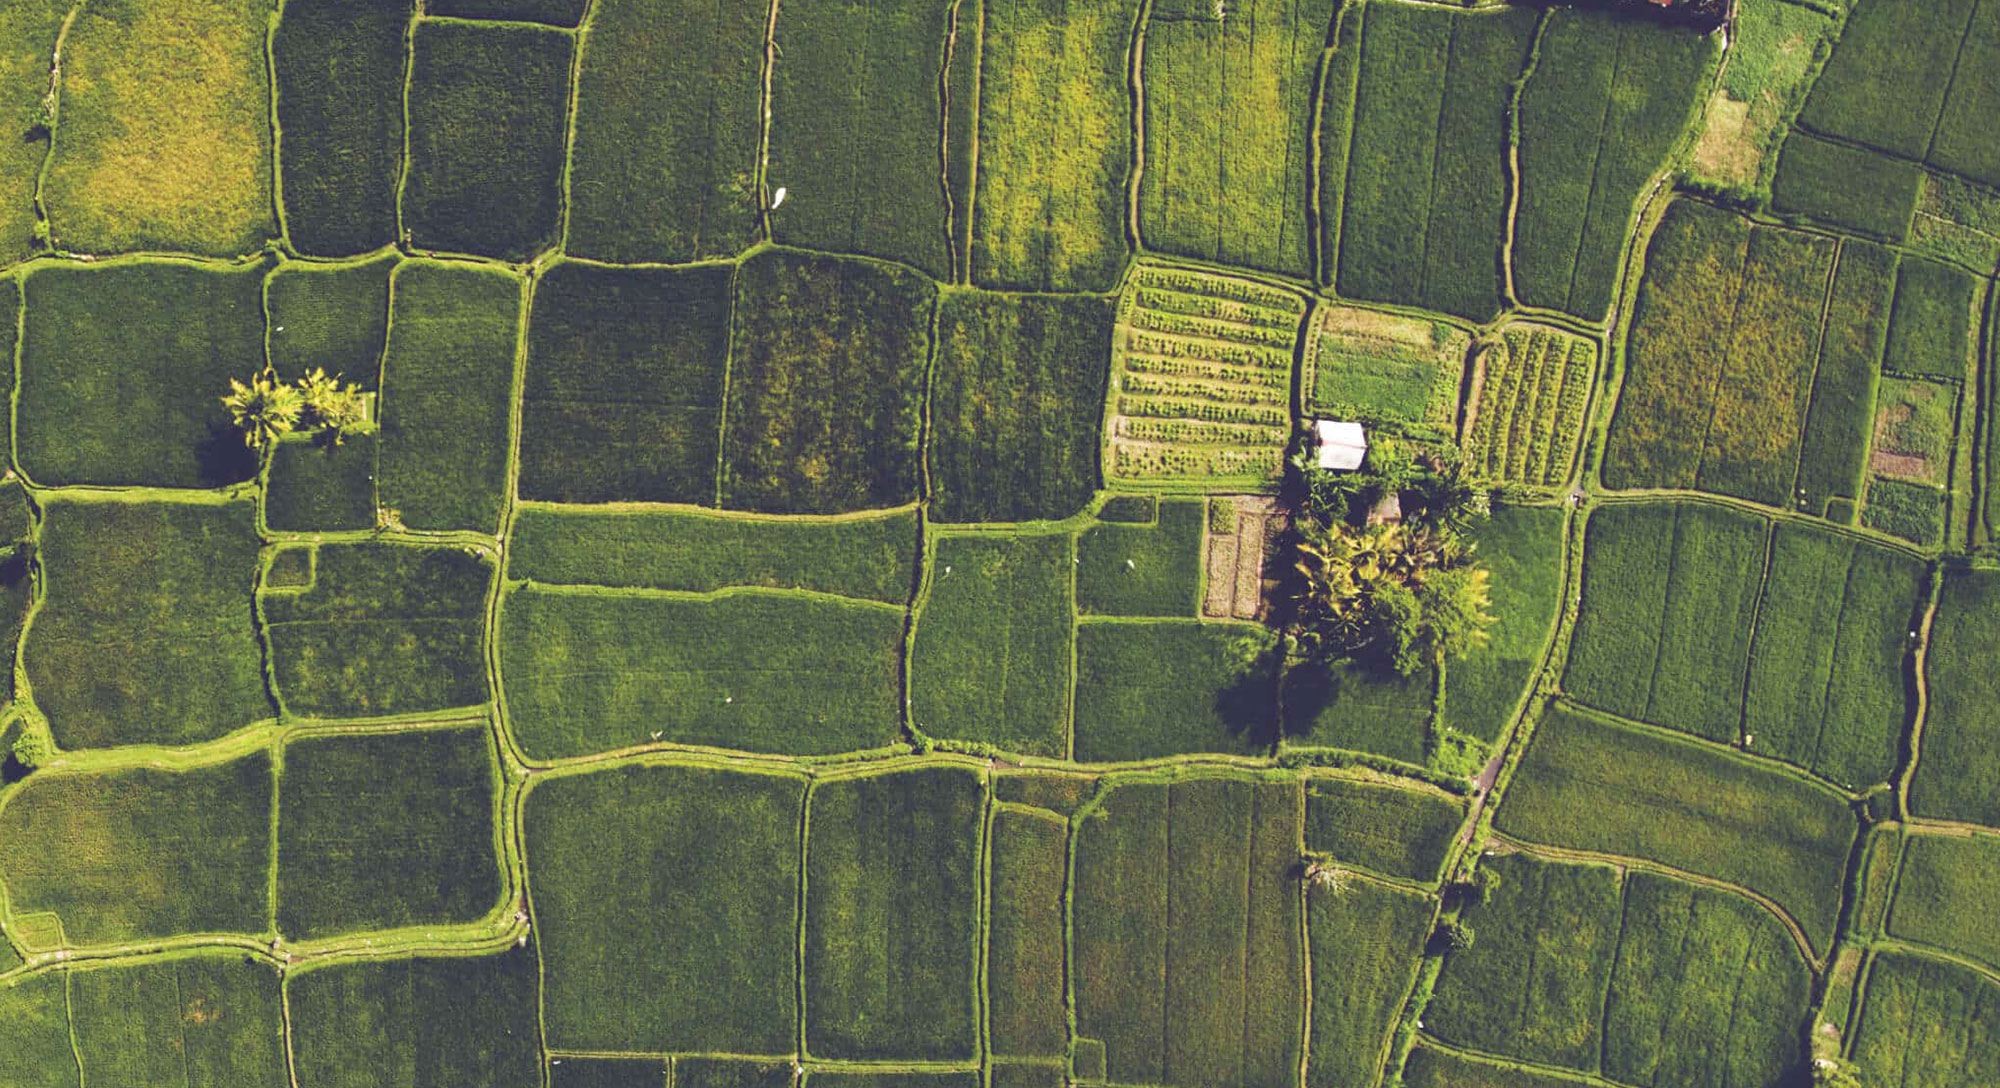 CPM - aerial photo of farmland